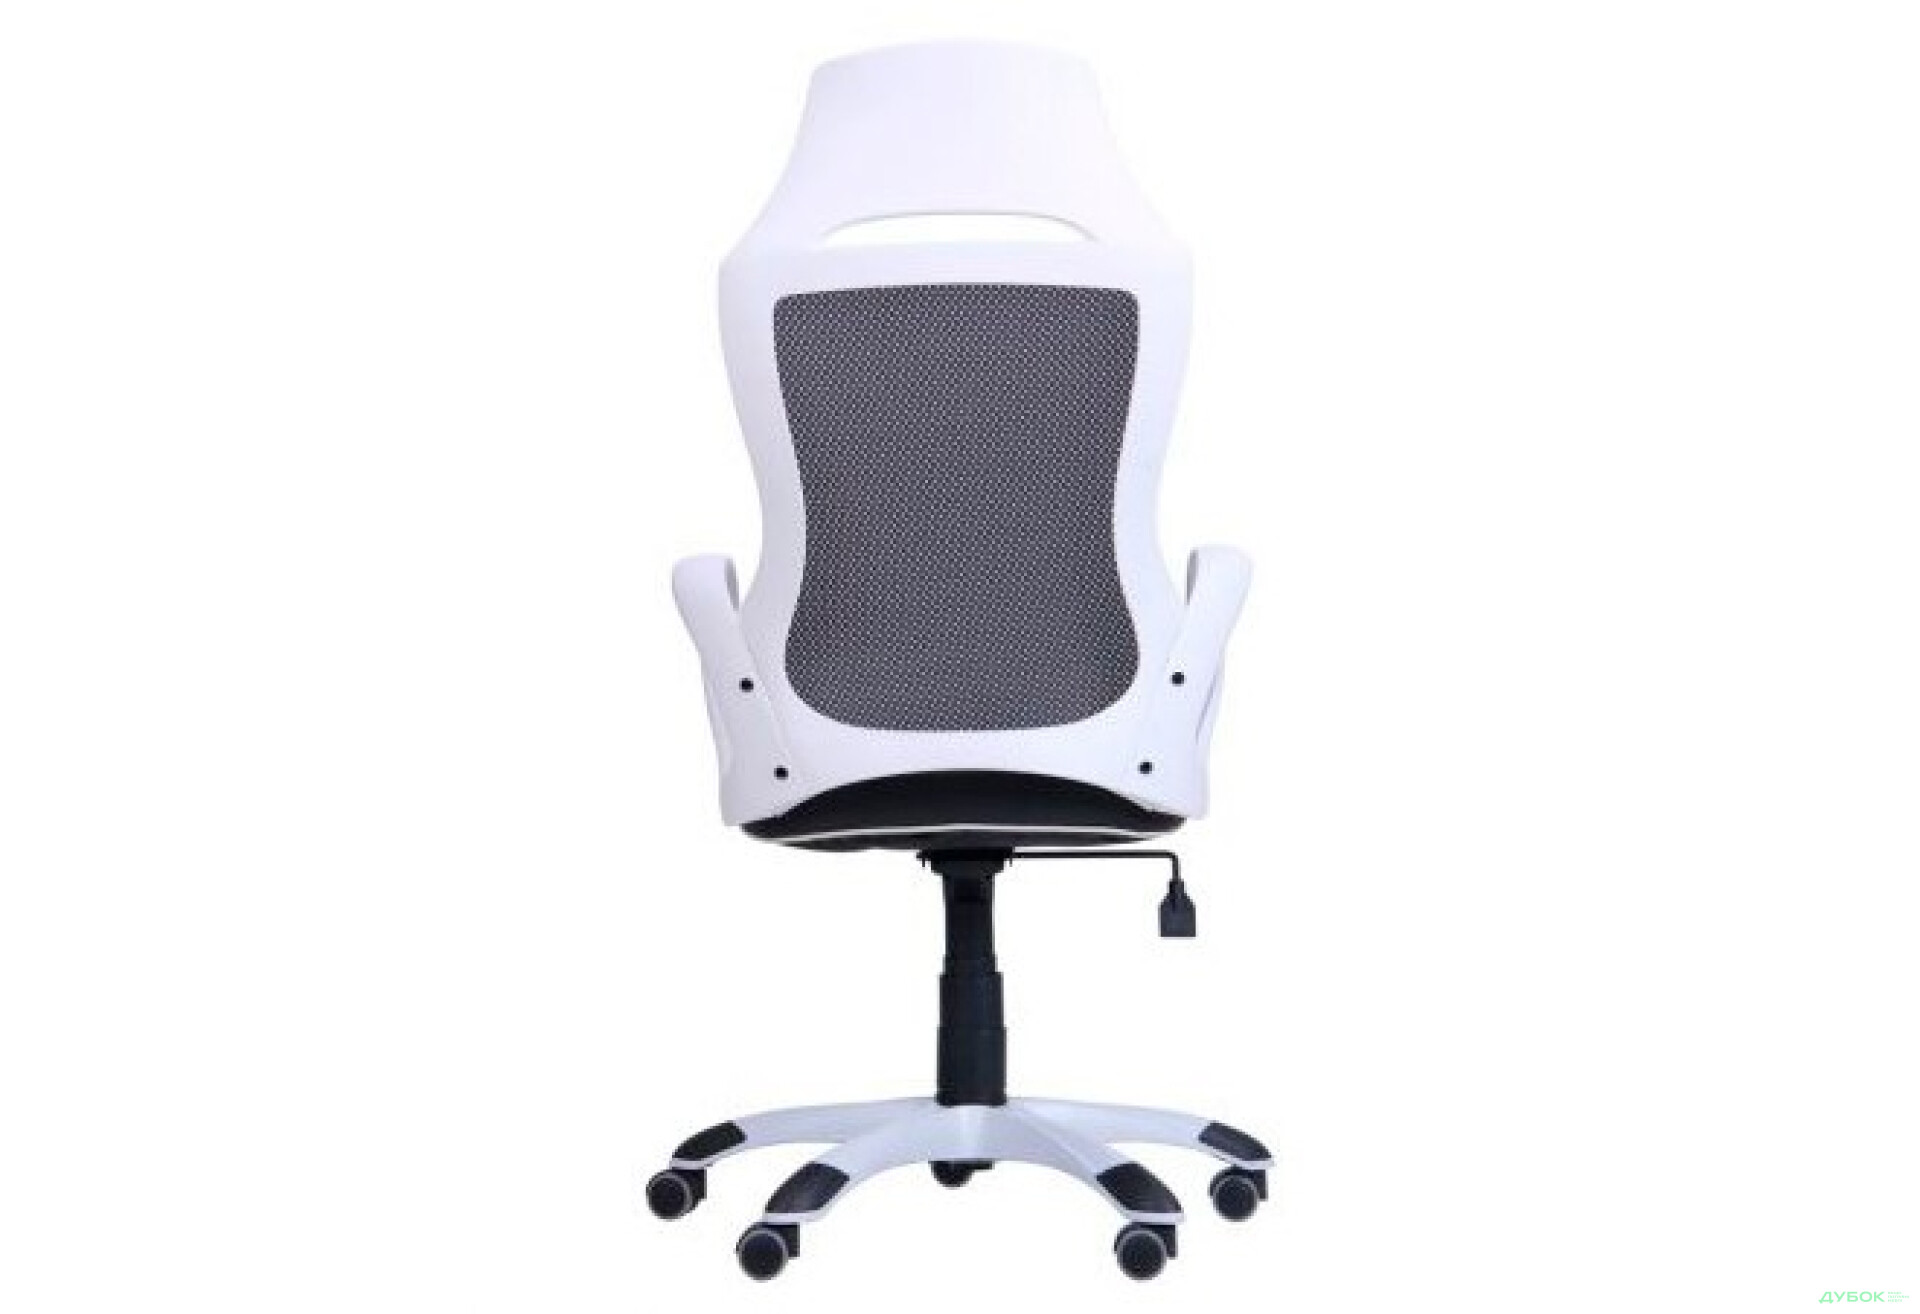 Фото 4 - Кресло Viper белый, сиденье Неаполь N-20/спинка Сетка черная, арт.261756 АМФ